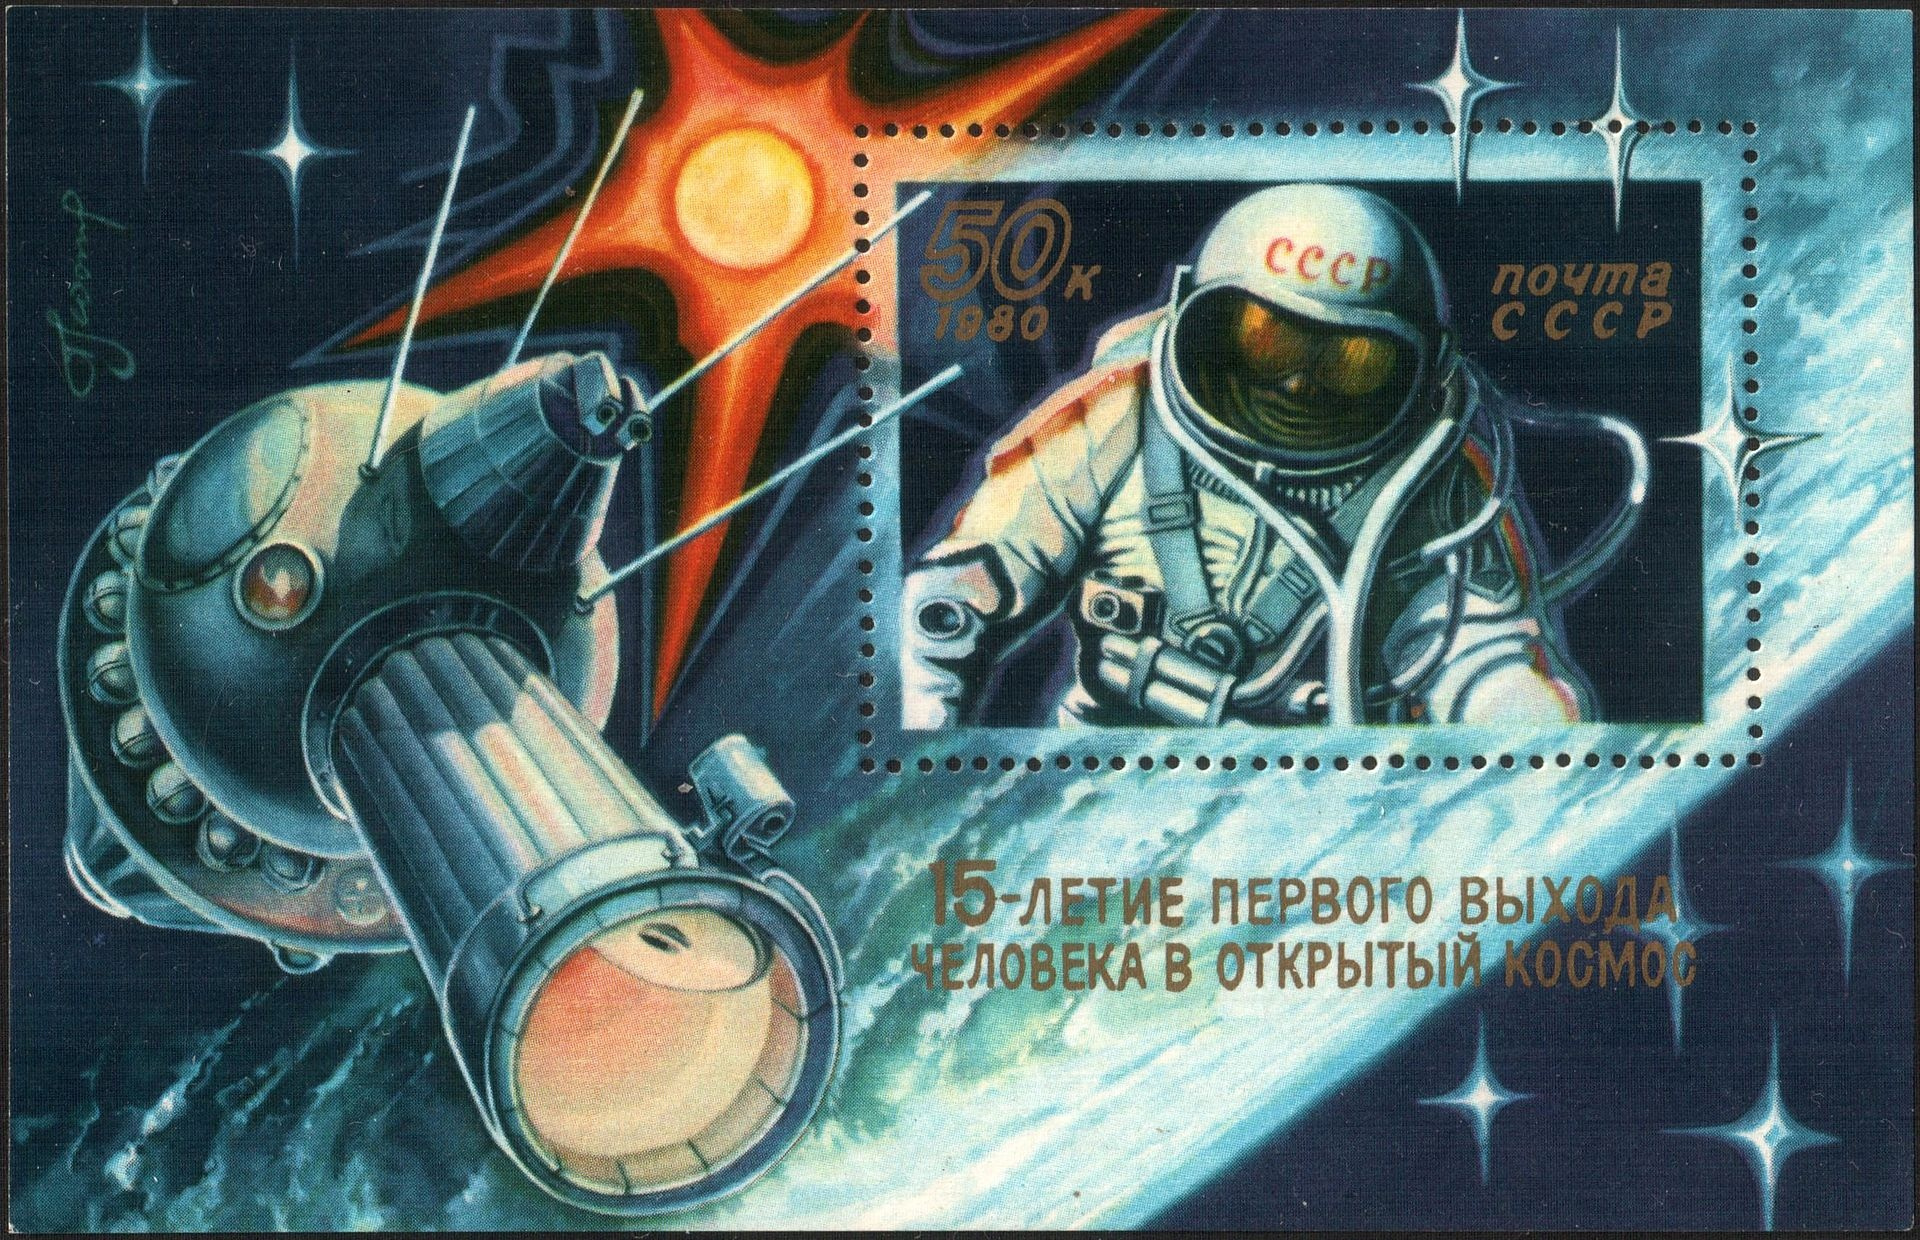 Одним из хобби Леонова было написание картин. Часть рисунков попали на подарочный почтовый блок в честь юбилея со дня выхода в открытый космос